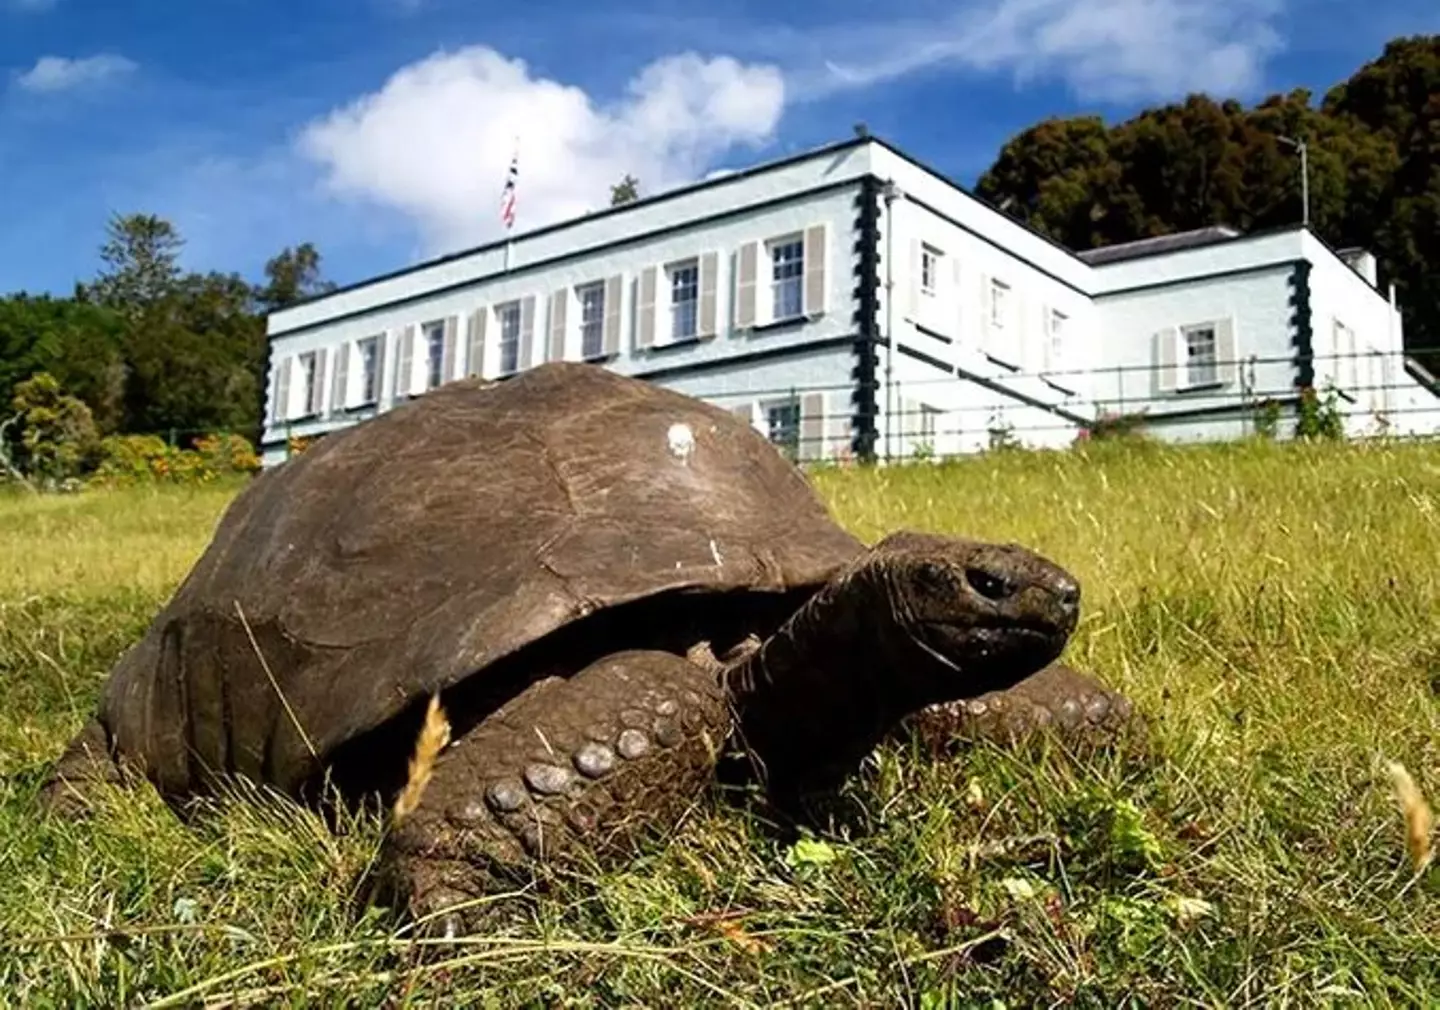 Jonathan the tortoise. (Guinness World Records)